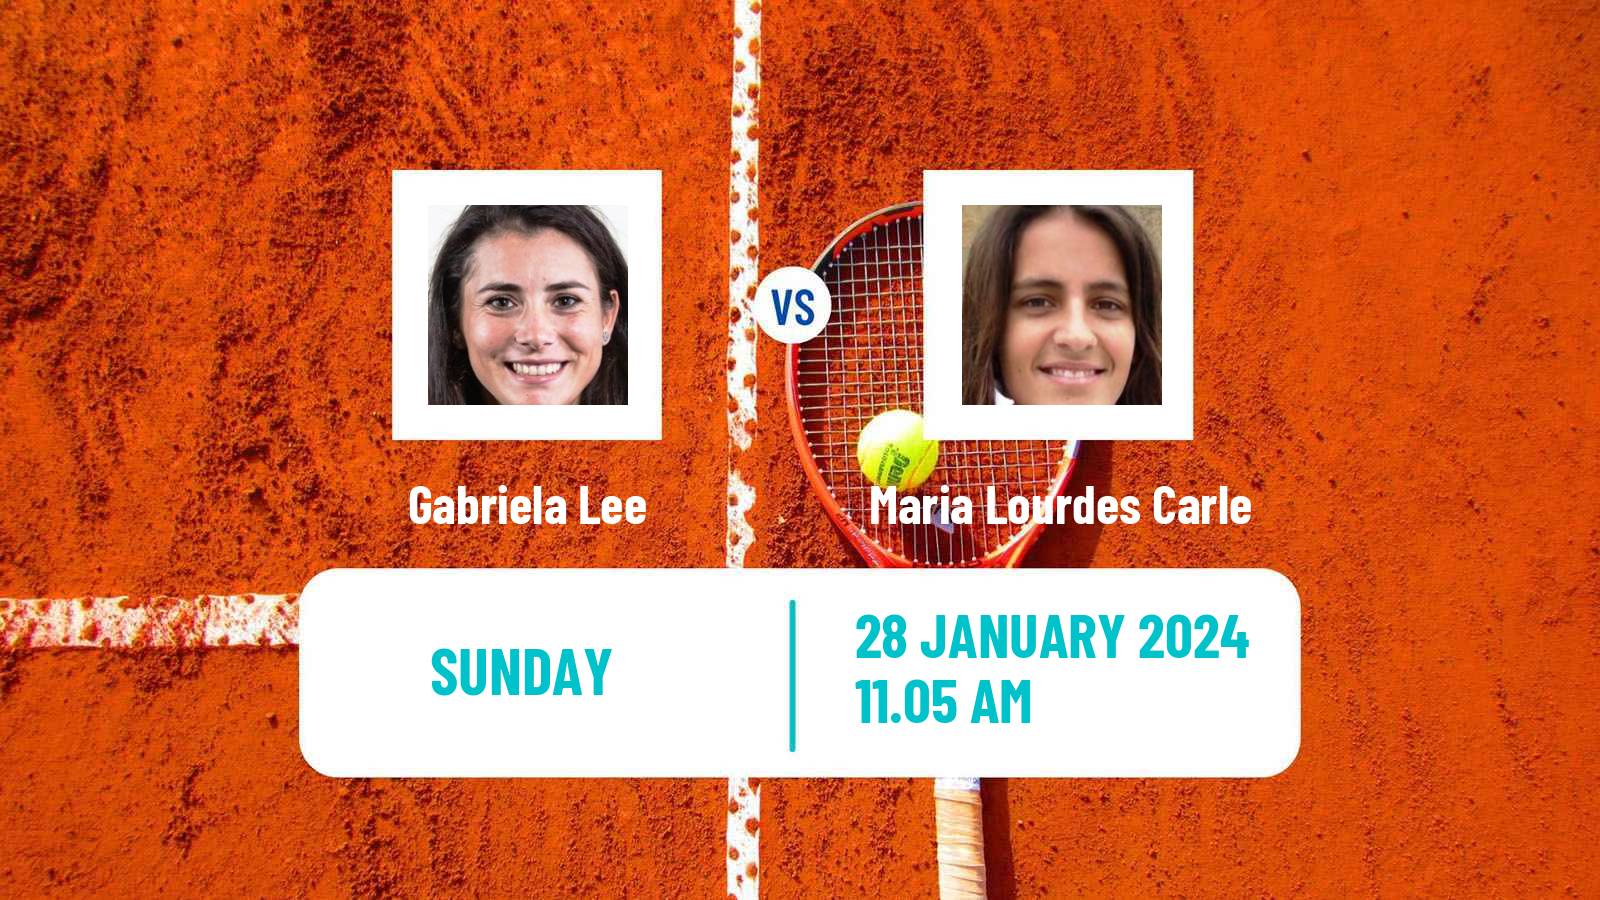 Tennis ITF W75 H Vero Beach Fl Women Gabriela Lee - Maria Lourdes Carle